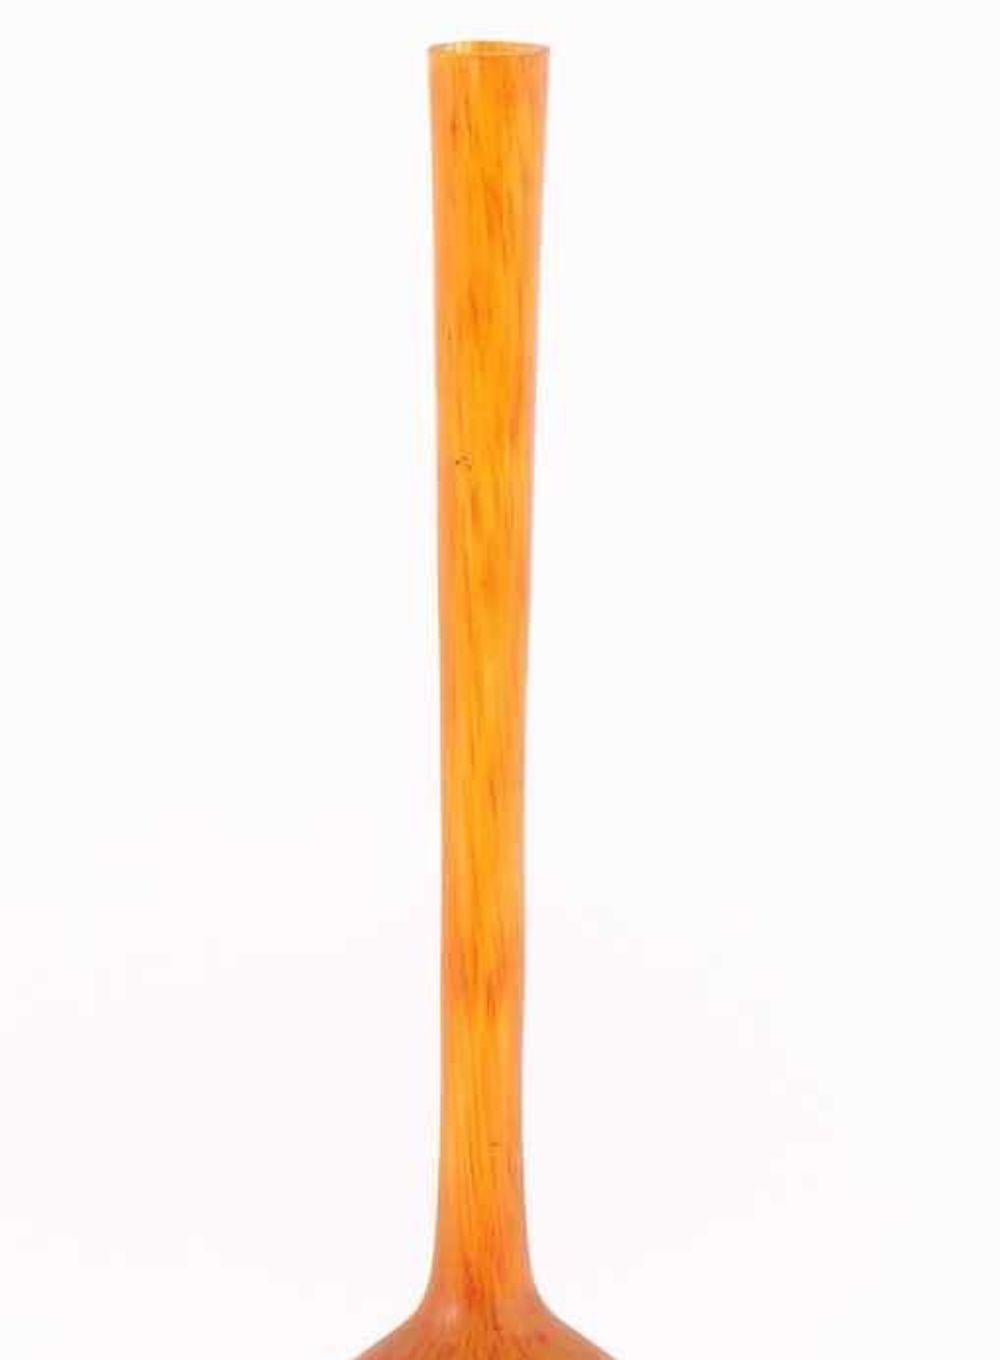 Diese Vase von Berluze ist ein originelles Dekorationsobjekt aus den 1920er Jahren.

Orangefarbene Glasvase namens Berluze (Langhalsvase in persischer Form) von André Delatte, der 1921 eine kleine Glashütte in Jarville in der Nähe von Nancy